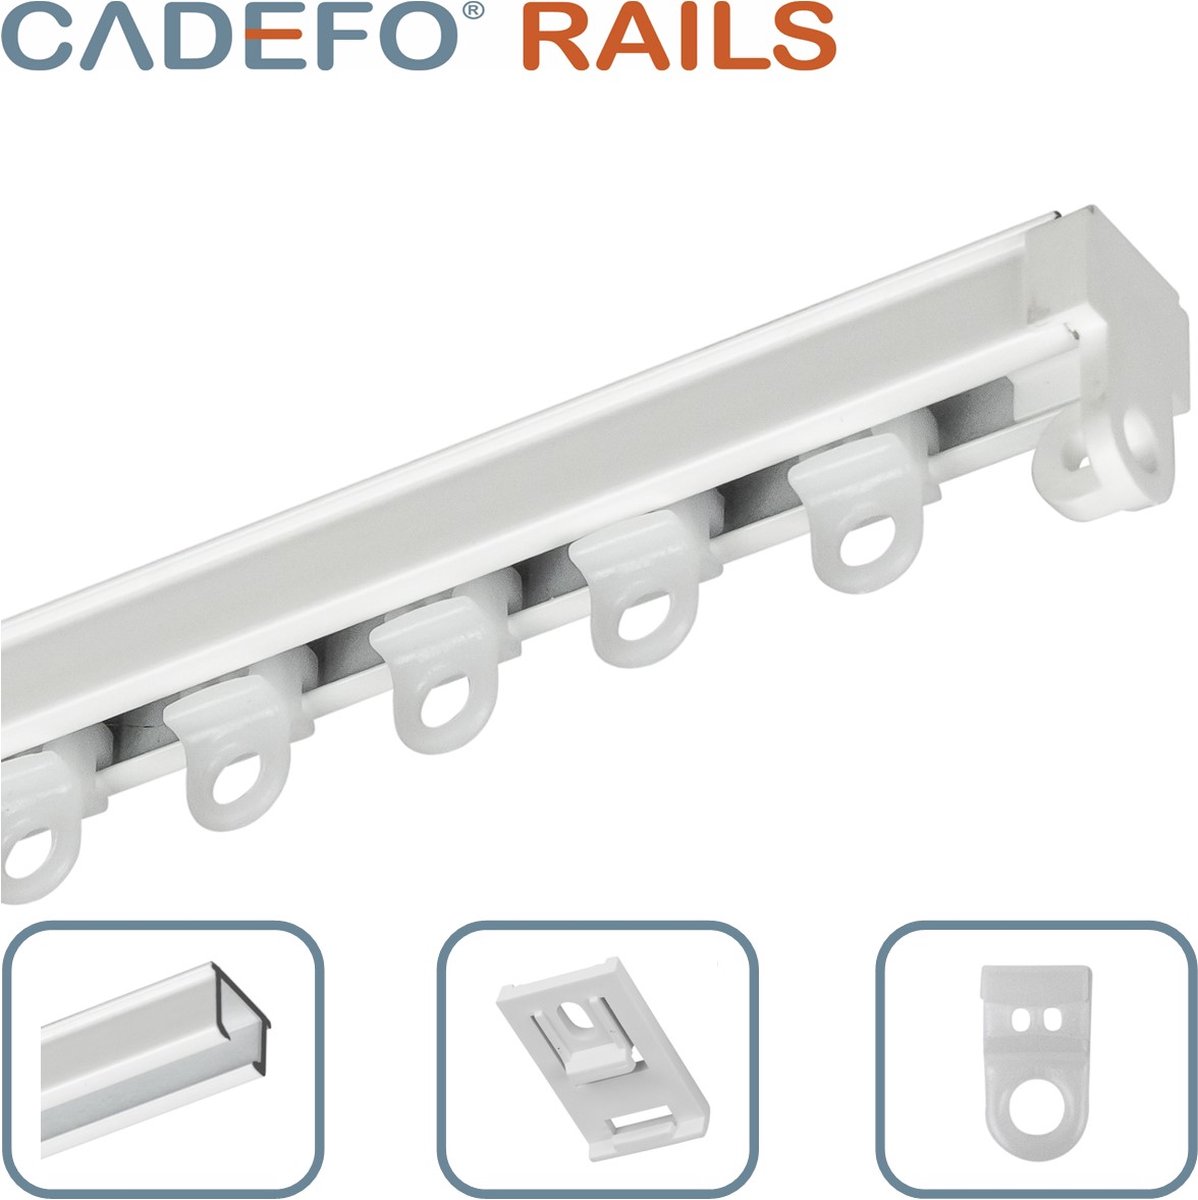 CADEFO RAILS (301 - 350 cm) Gordijnrails - Compleet op maat! - UIT 1 STUK - Leverbaar tot 6 meter - Plafondbevestiging - Lengte 301 cm